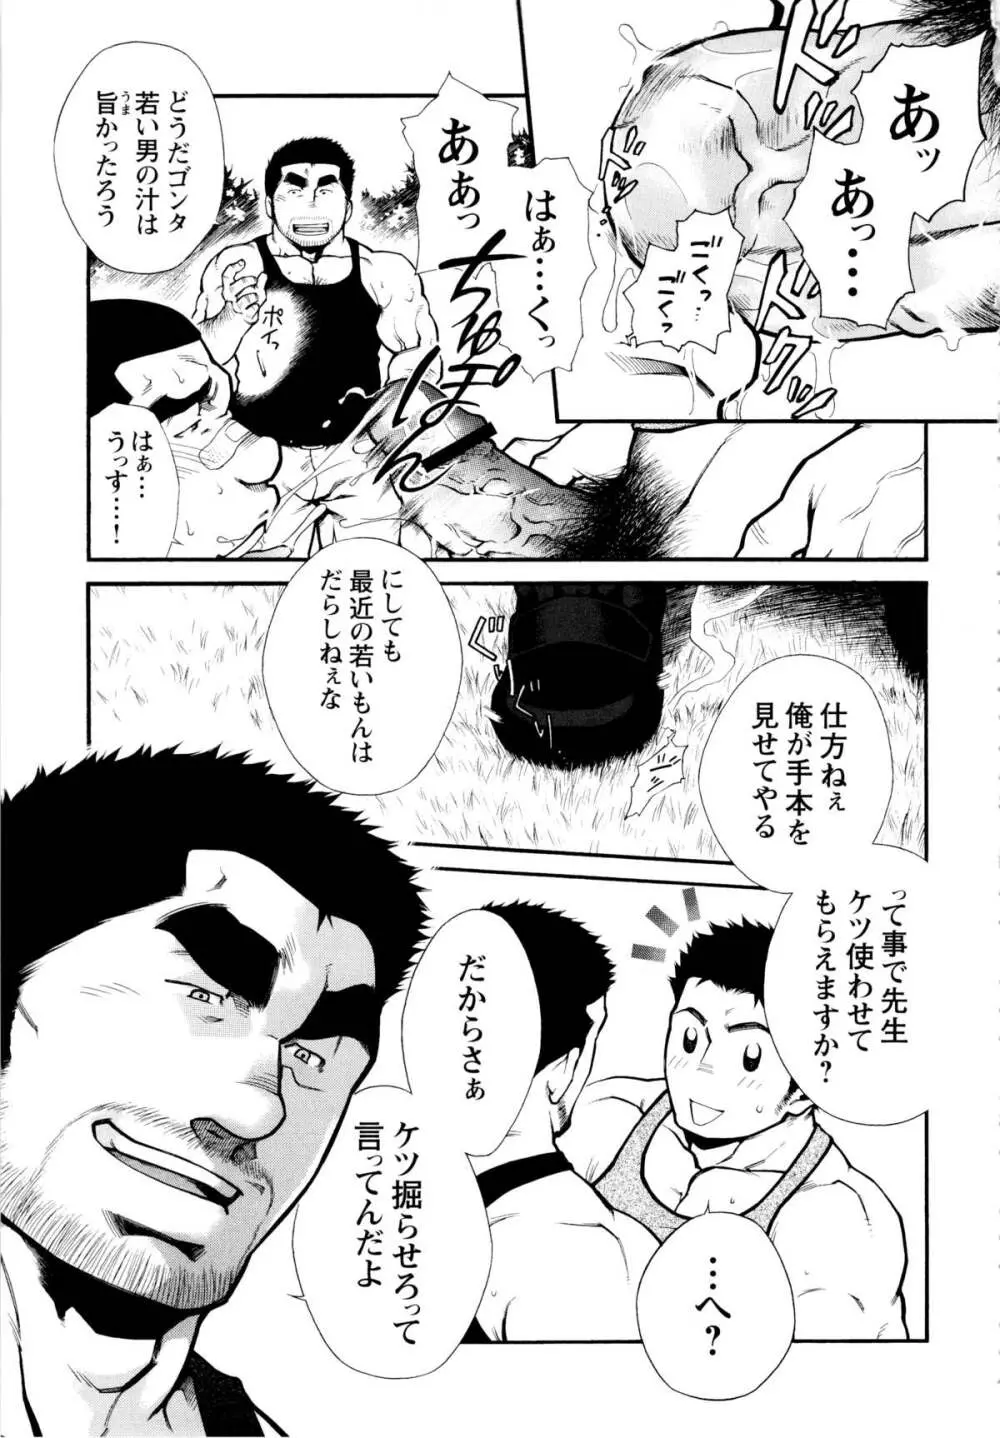 Osu Hachi no Mitsu – by -晃次郎 (Terujirou) 13ページ